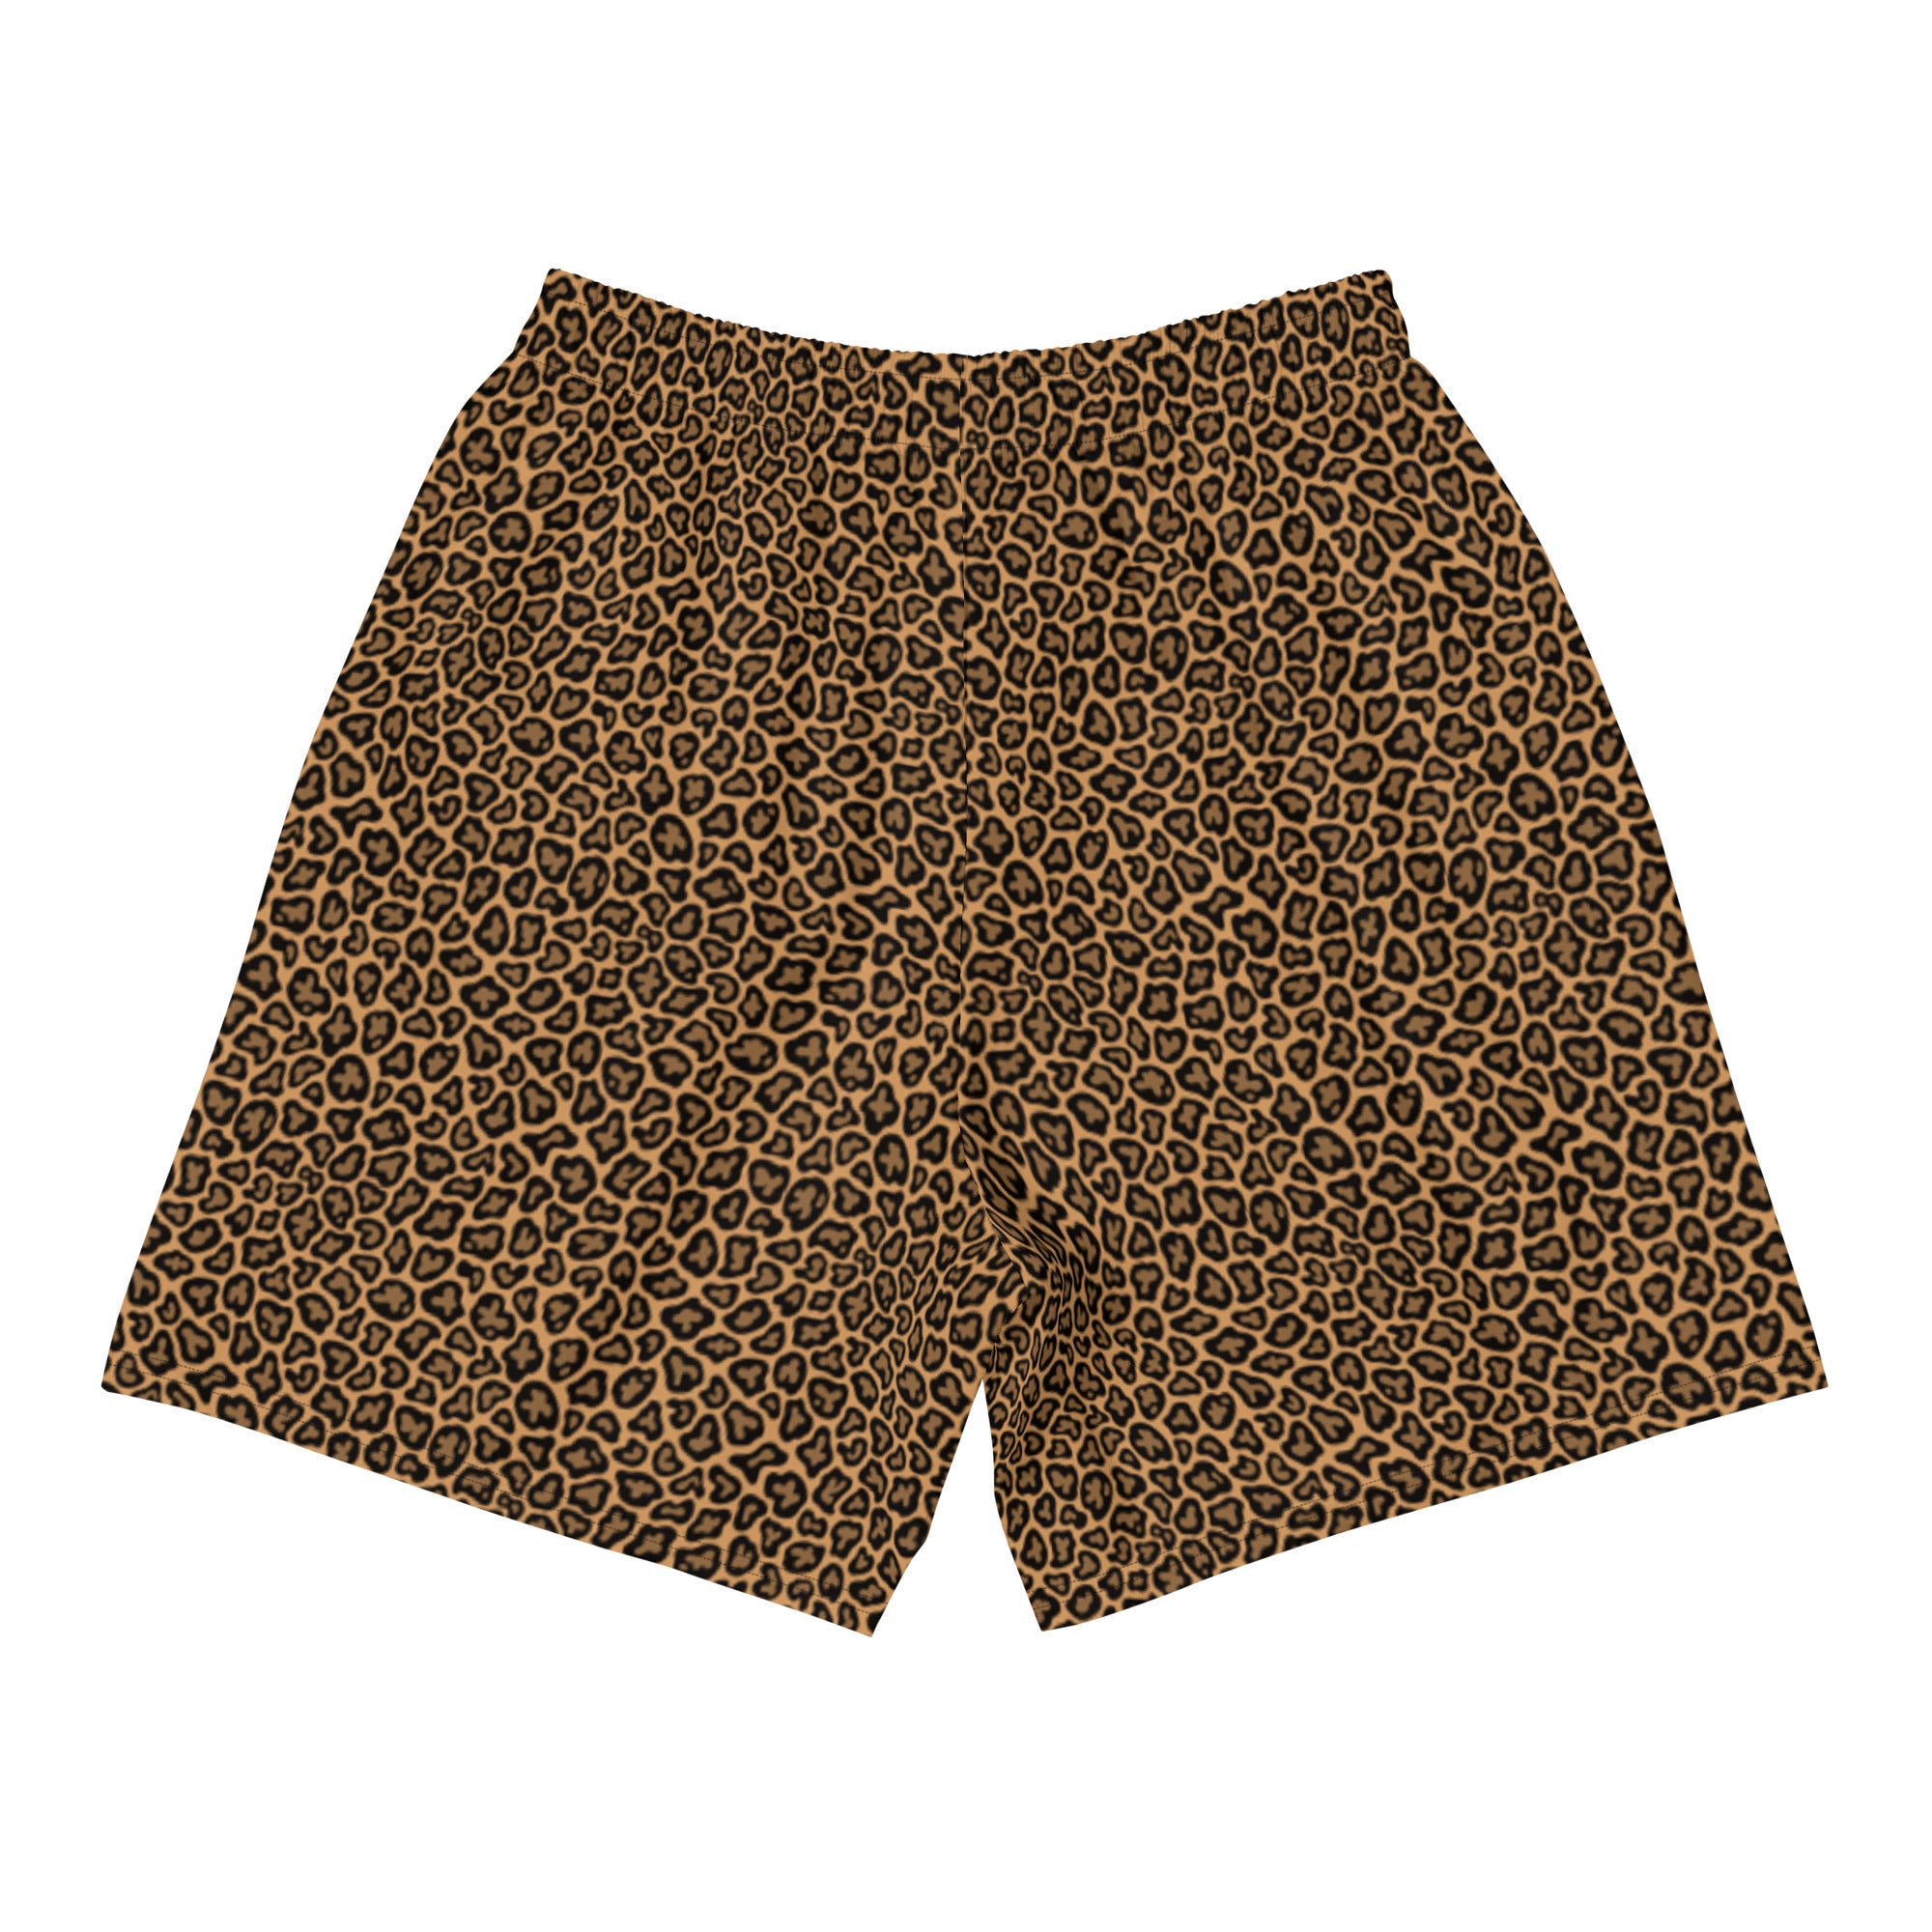 – Elite Print BallboyElite Ballboy Shorts Cheetah Athletic